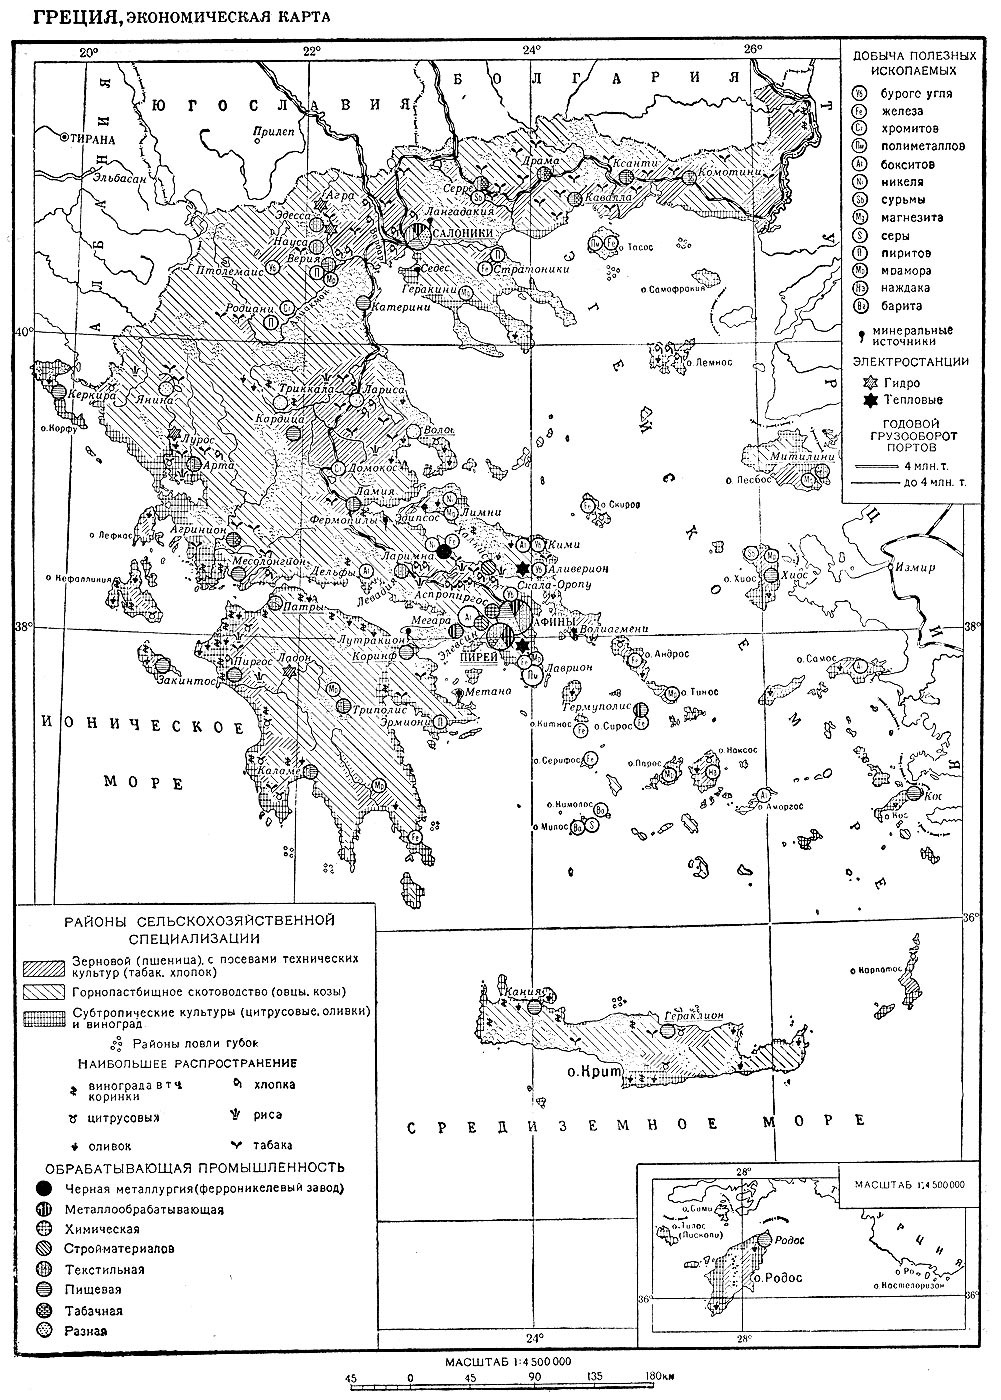 Греция, экономическая карта.